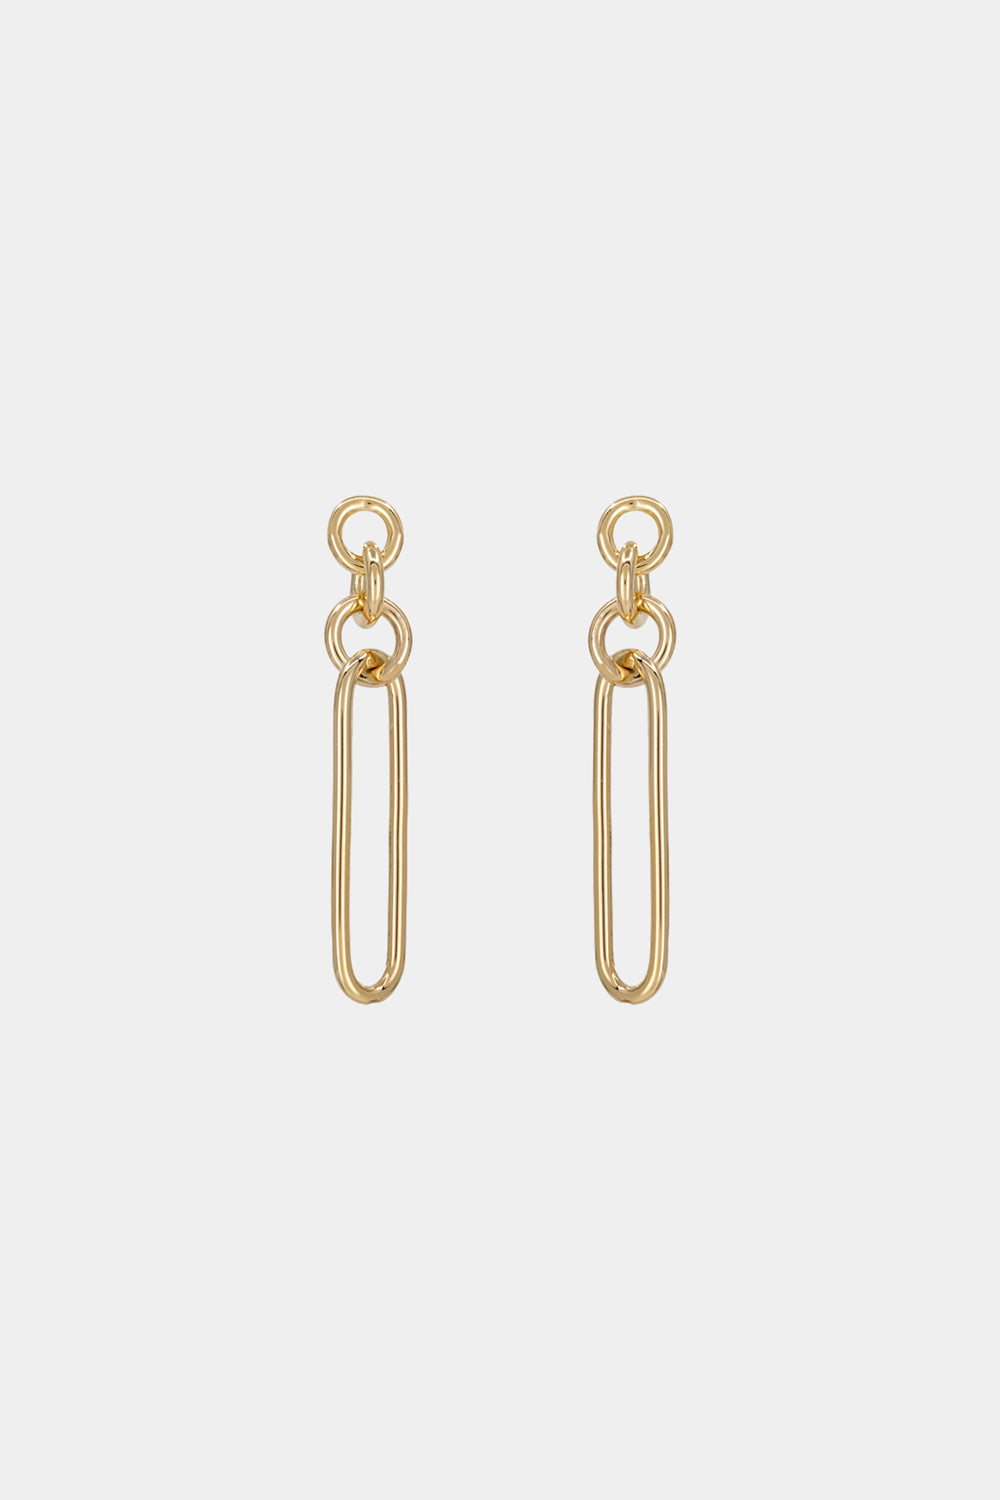 Lennie Earrings | 9K Yellow Gold